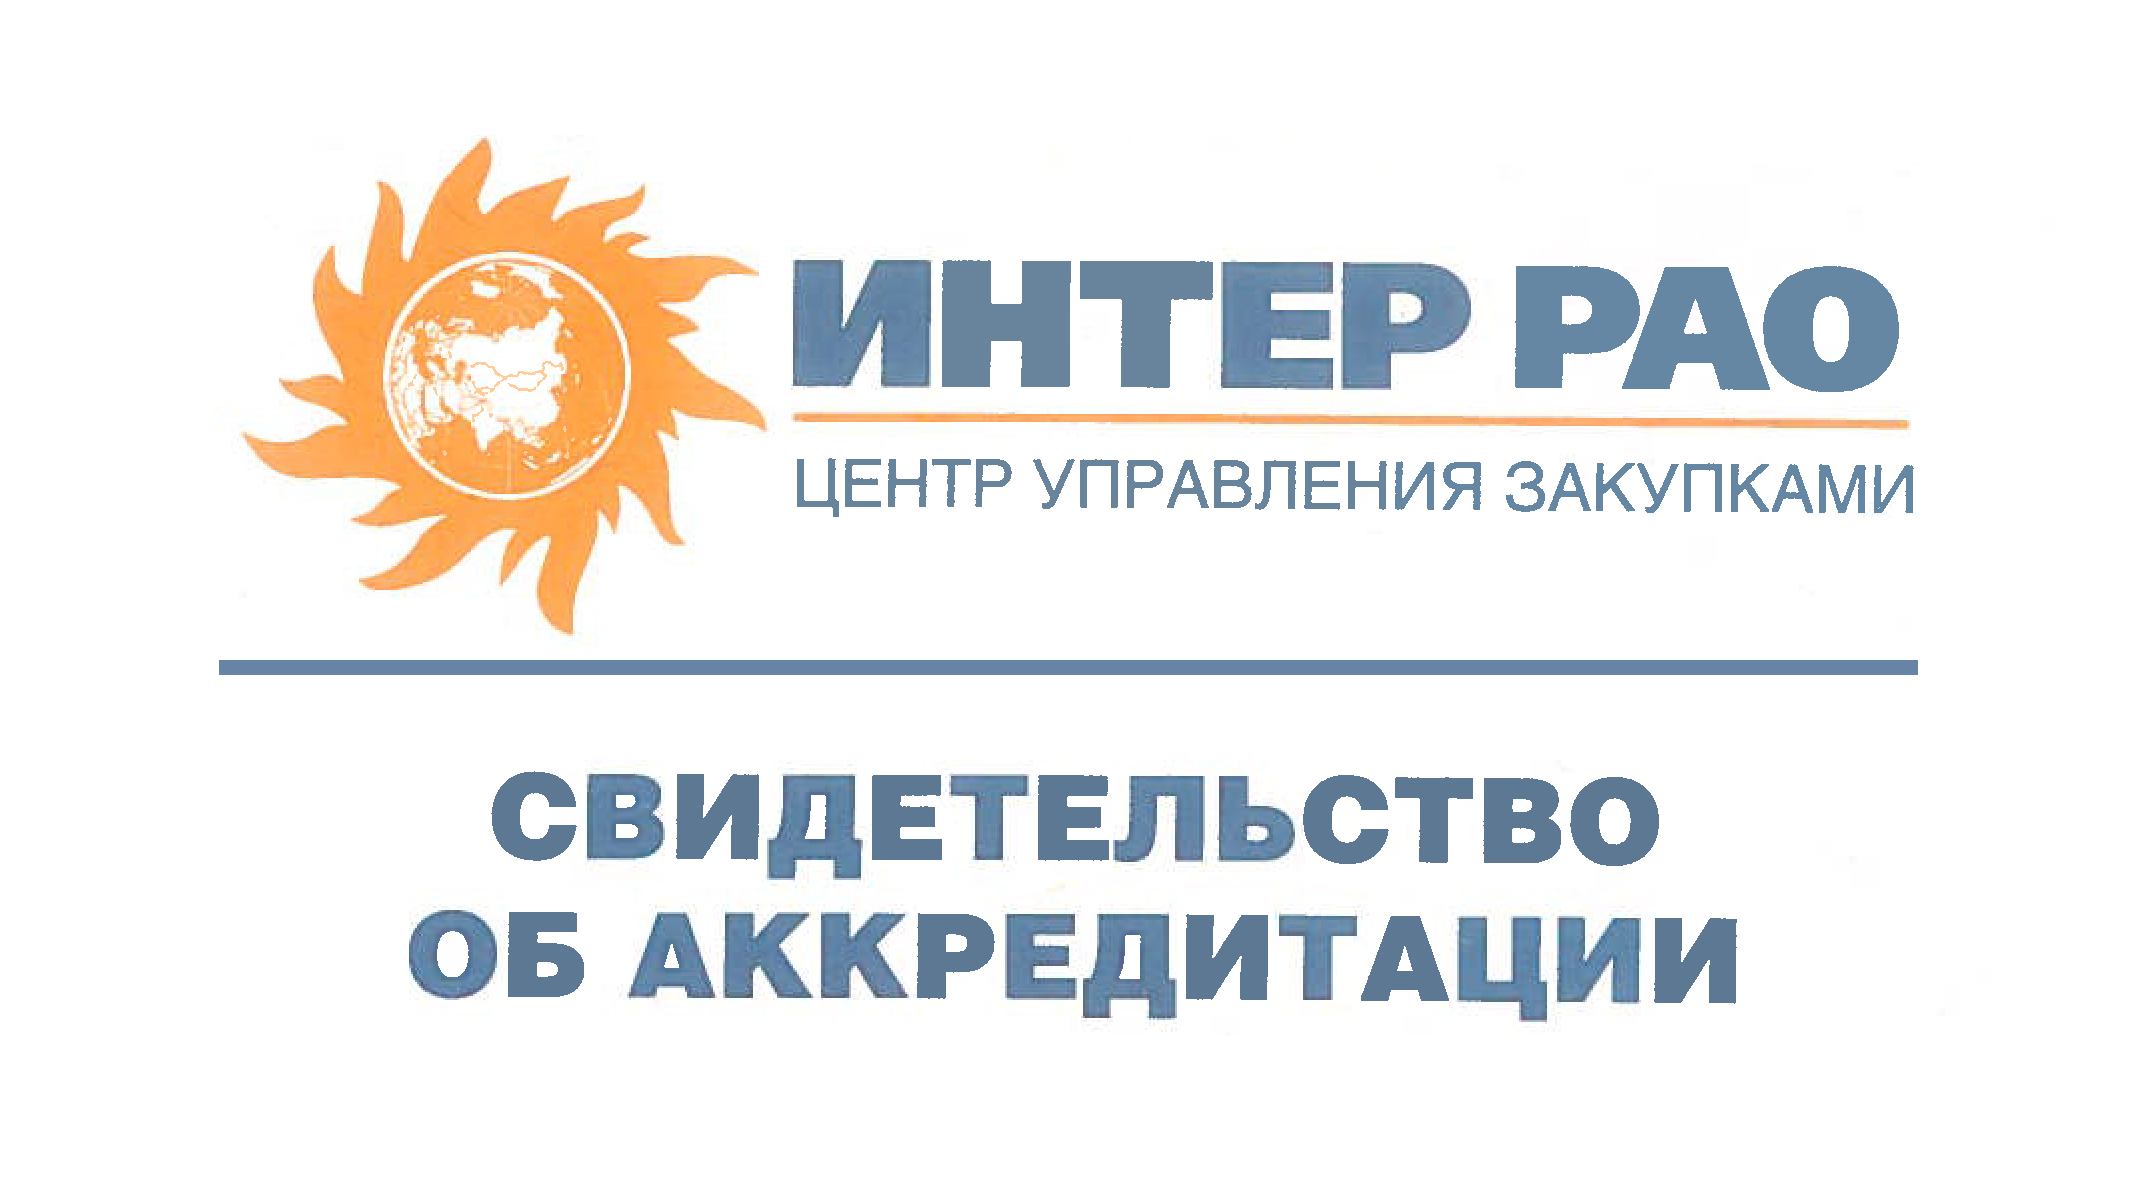 ТПК «ВАРТОН» получила свидетельство о прохождении аккредитации в Группе «Интер РАО»